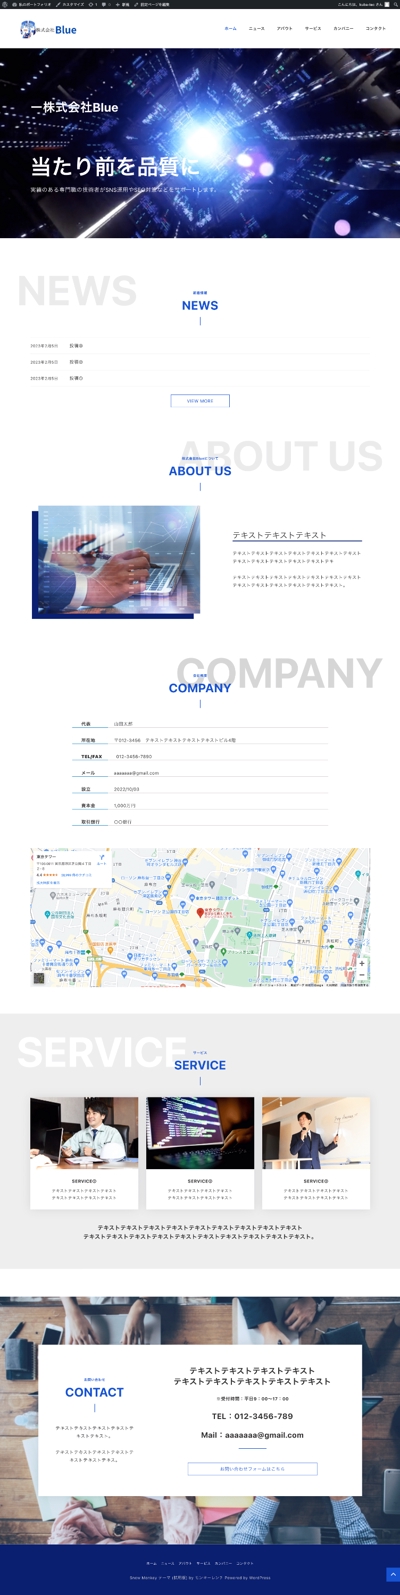 株式会社Blueのホームページ作成。